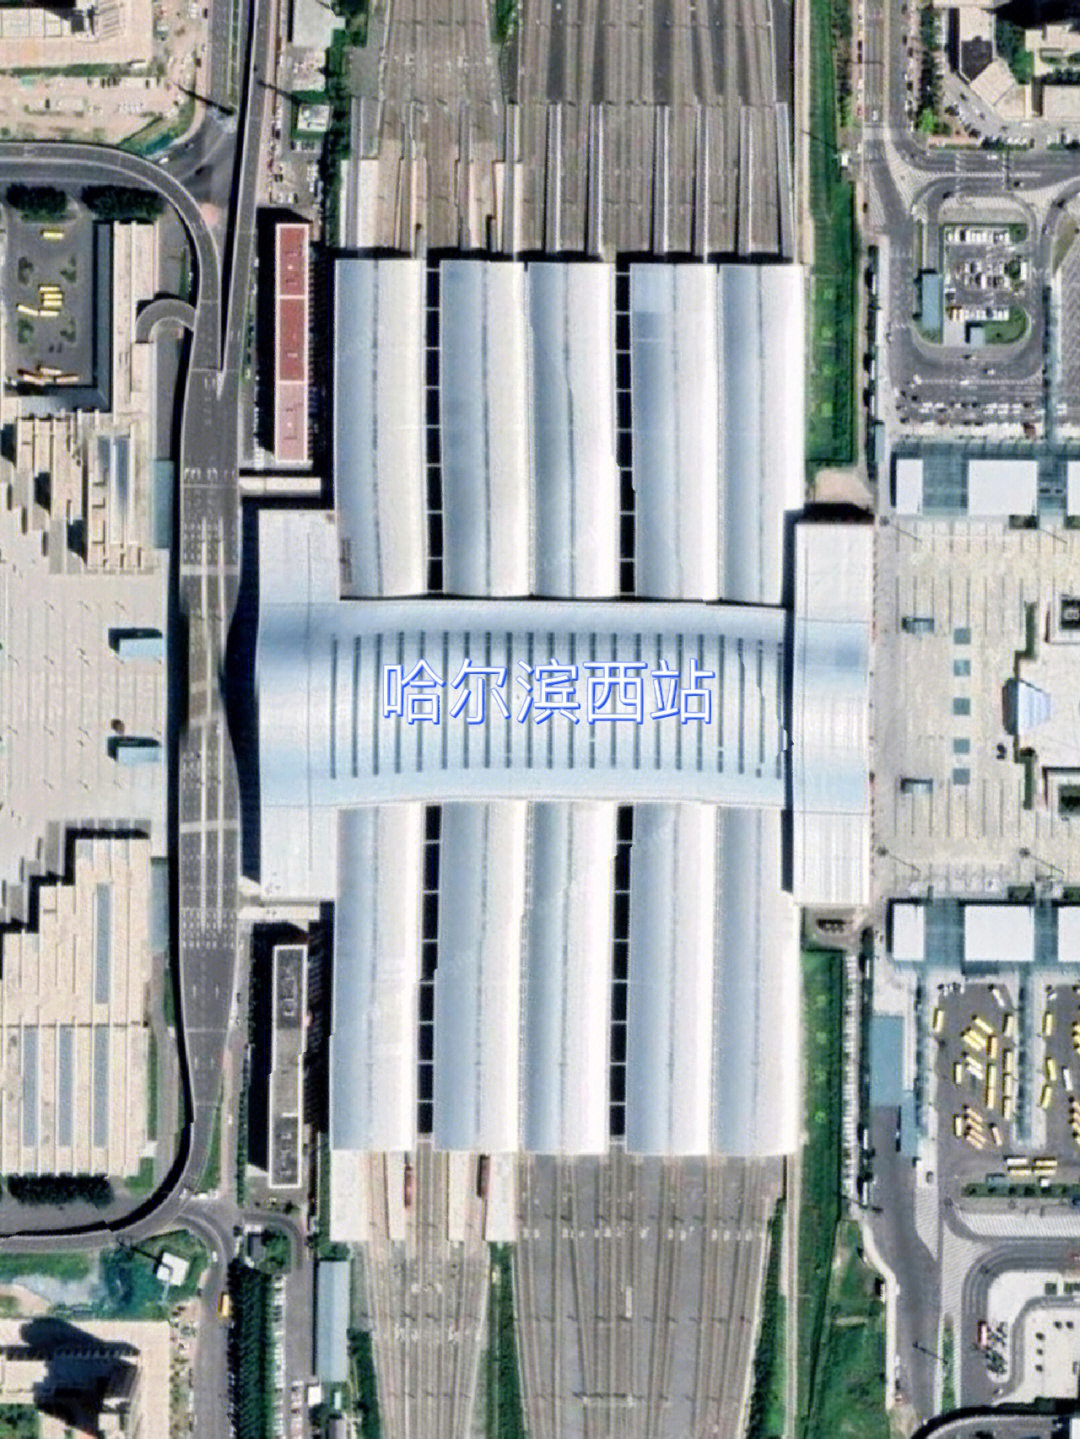 哈尔滨西站内部地图图片